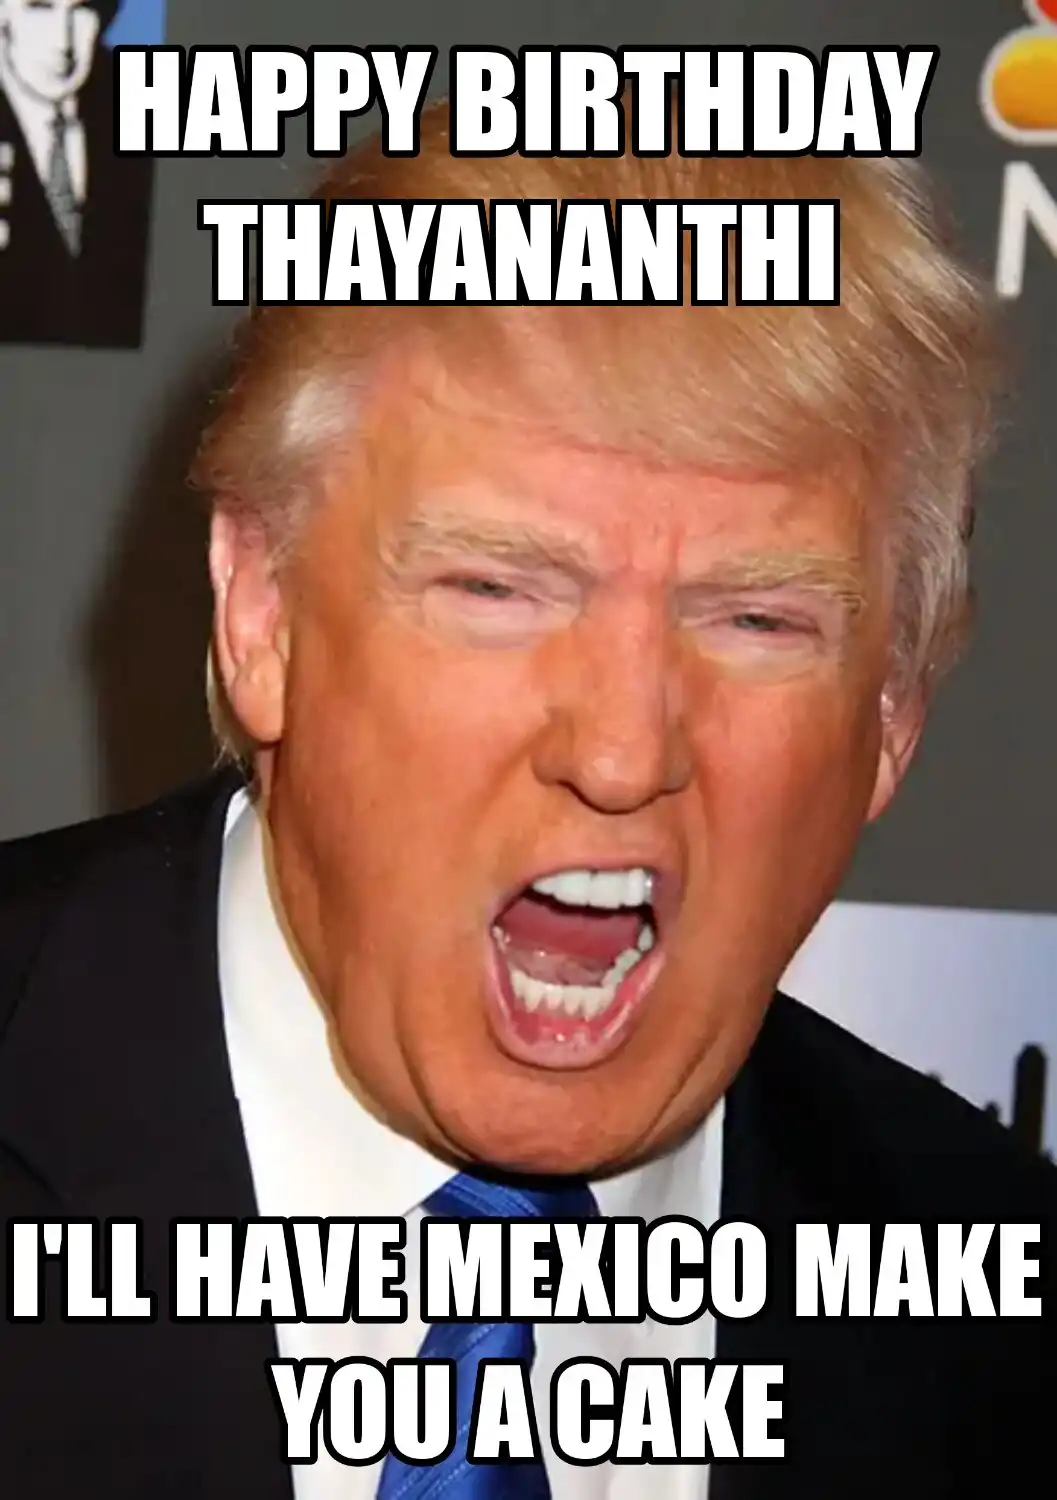 Happy Birthday Thayananthi Mexico Make You A Cake Meme